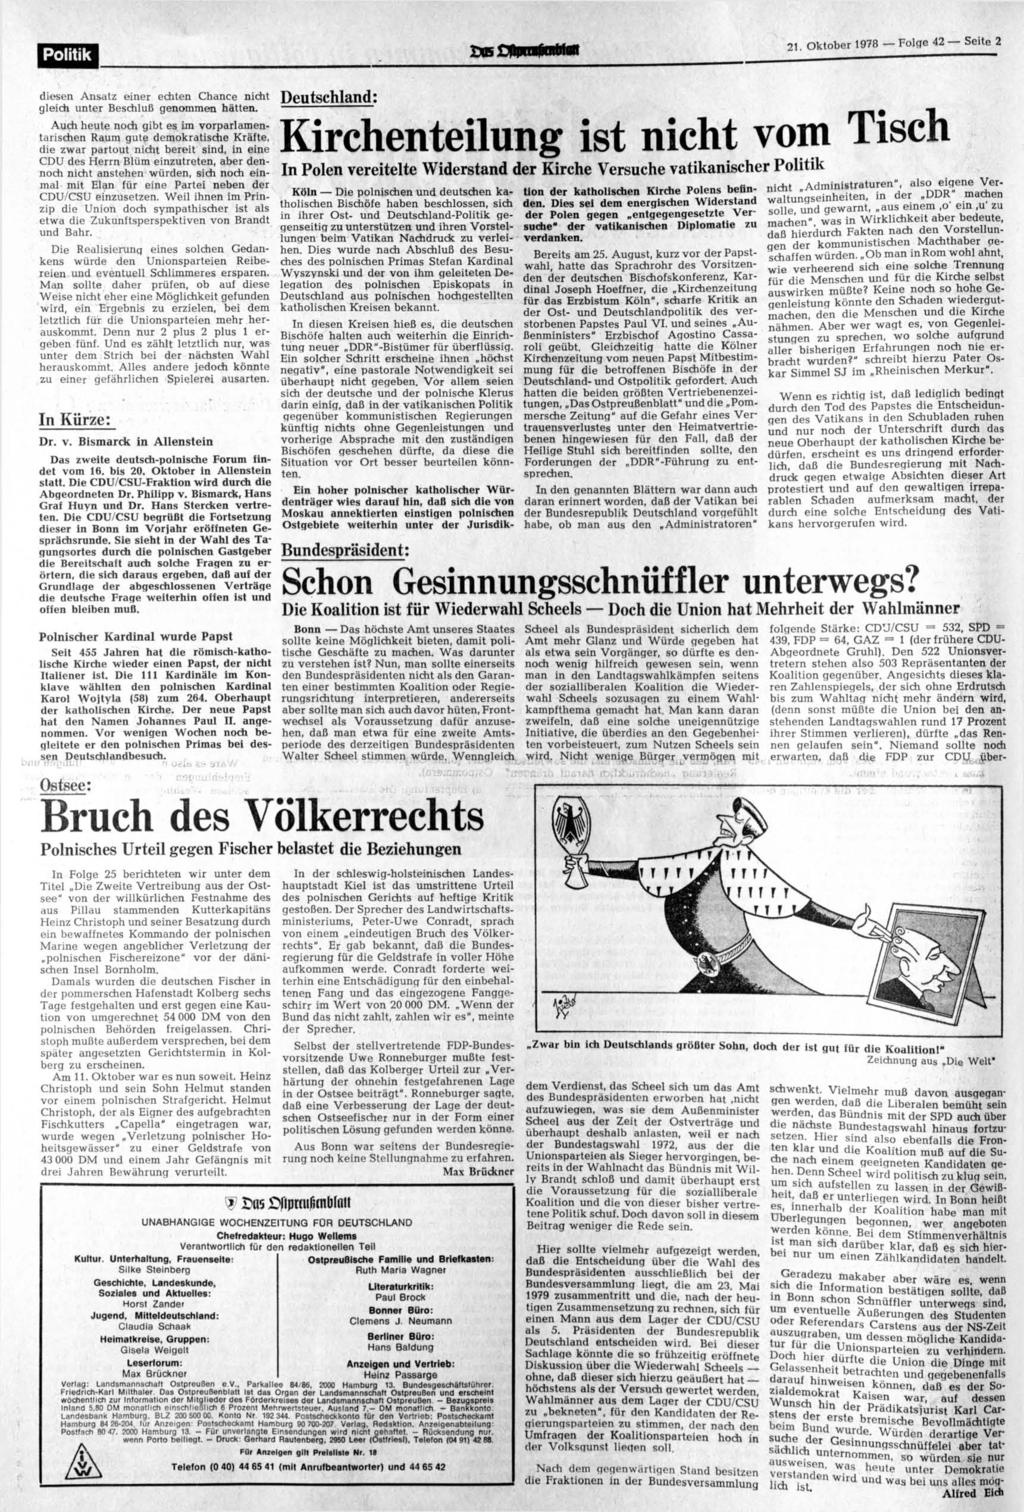 Politik jdbs L1U*u»kntrtafl 21. Oktober 1978 Folge 42 diesen Ansatz einer echten Chance nicht Deutschland gleich unter Beschluß genommen hätten.